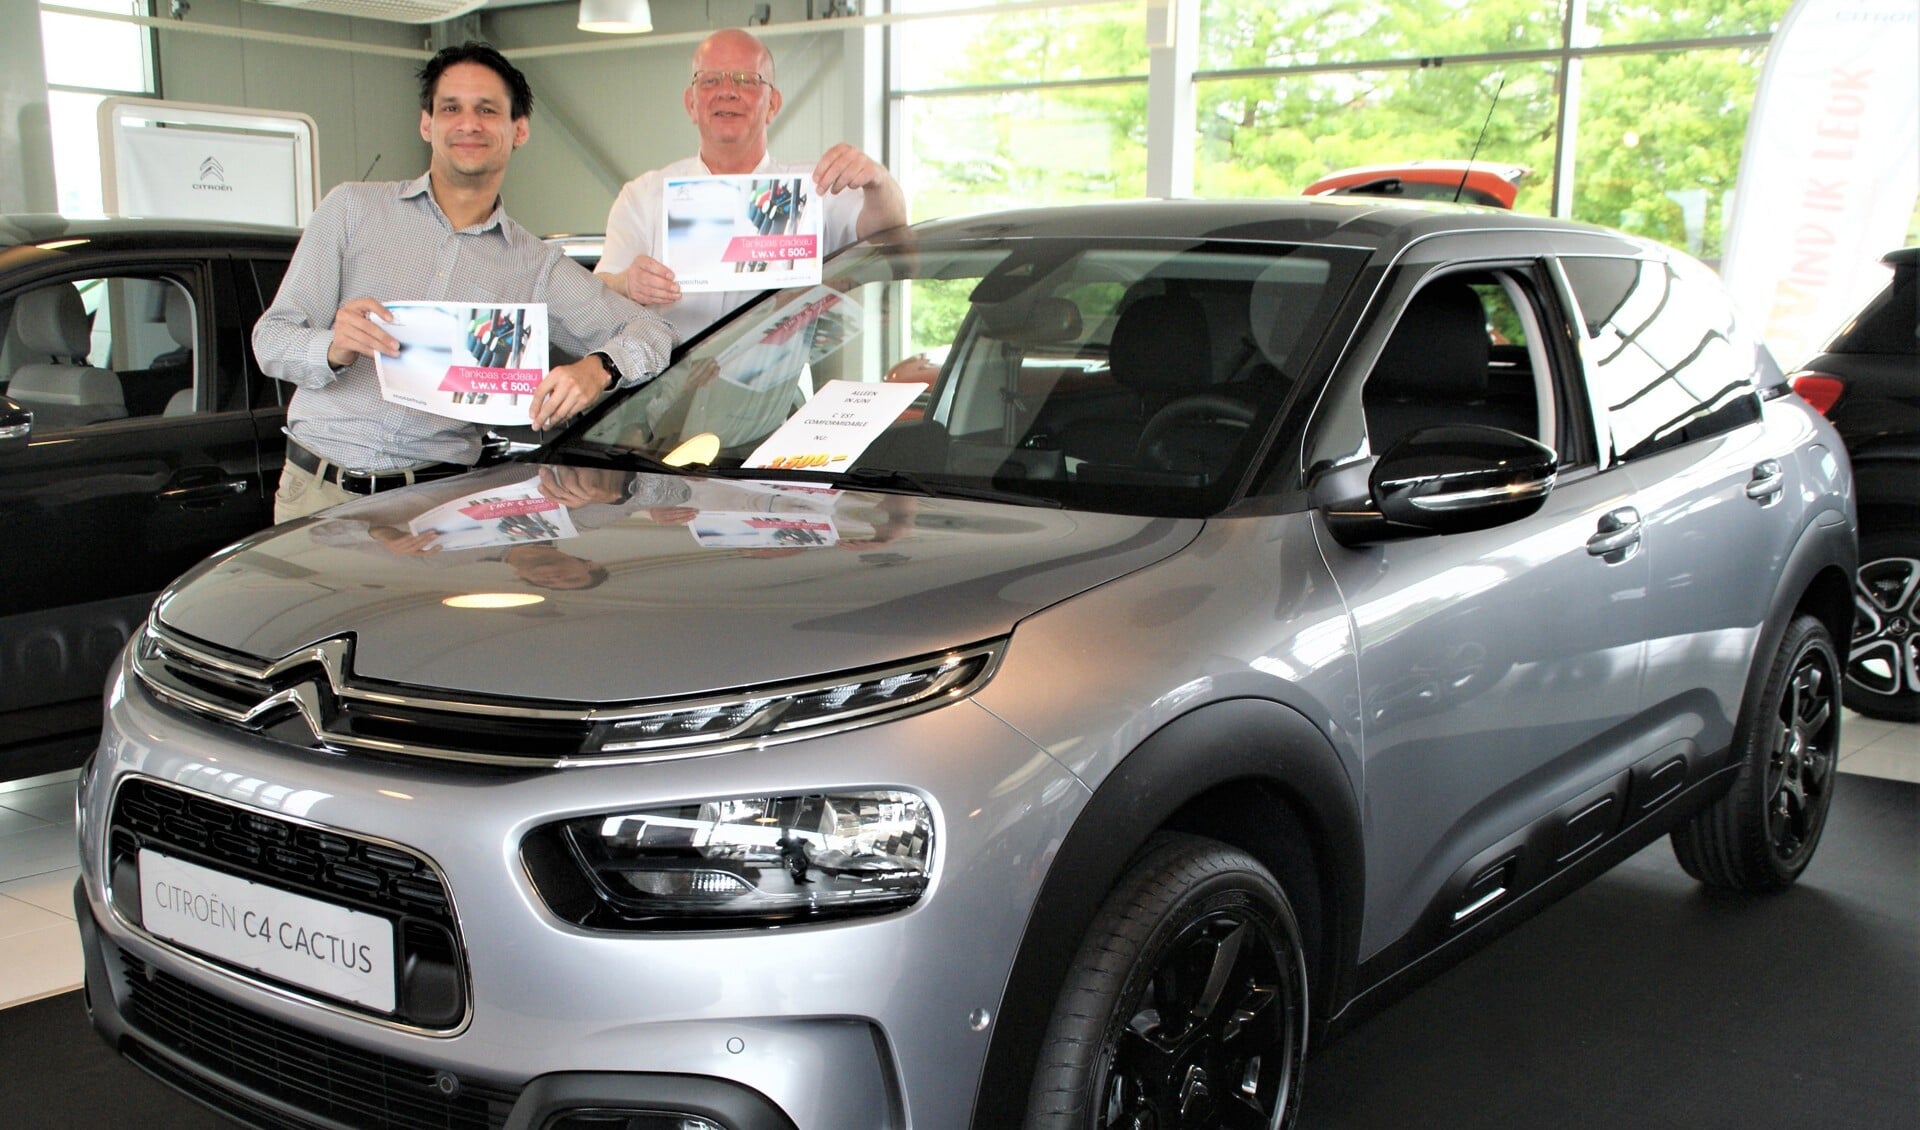 De verkoopadviseurs Roy Schaaij en Ben van Holsteijn, mèt tankpas, bij het actiemodel Citroën C4 Cactus.